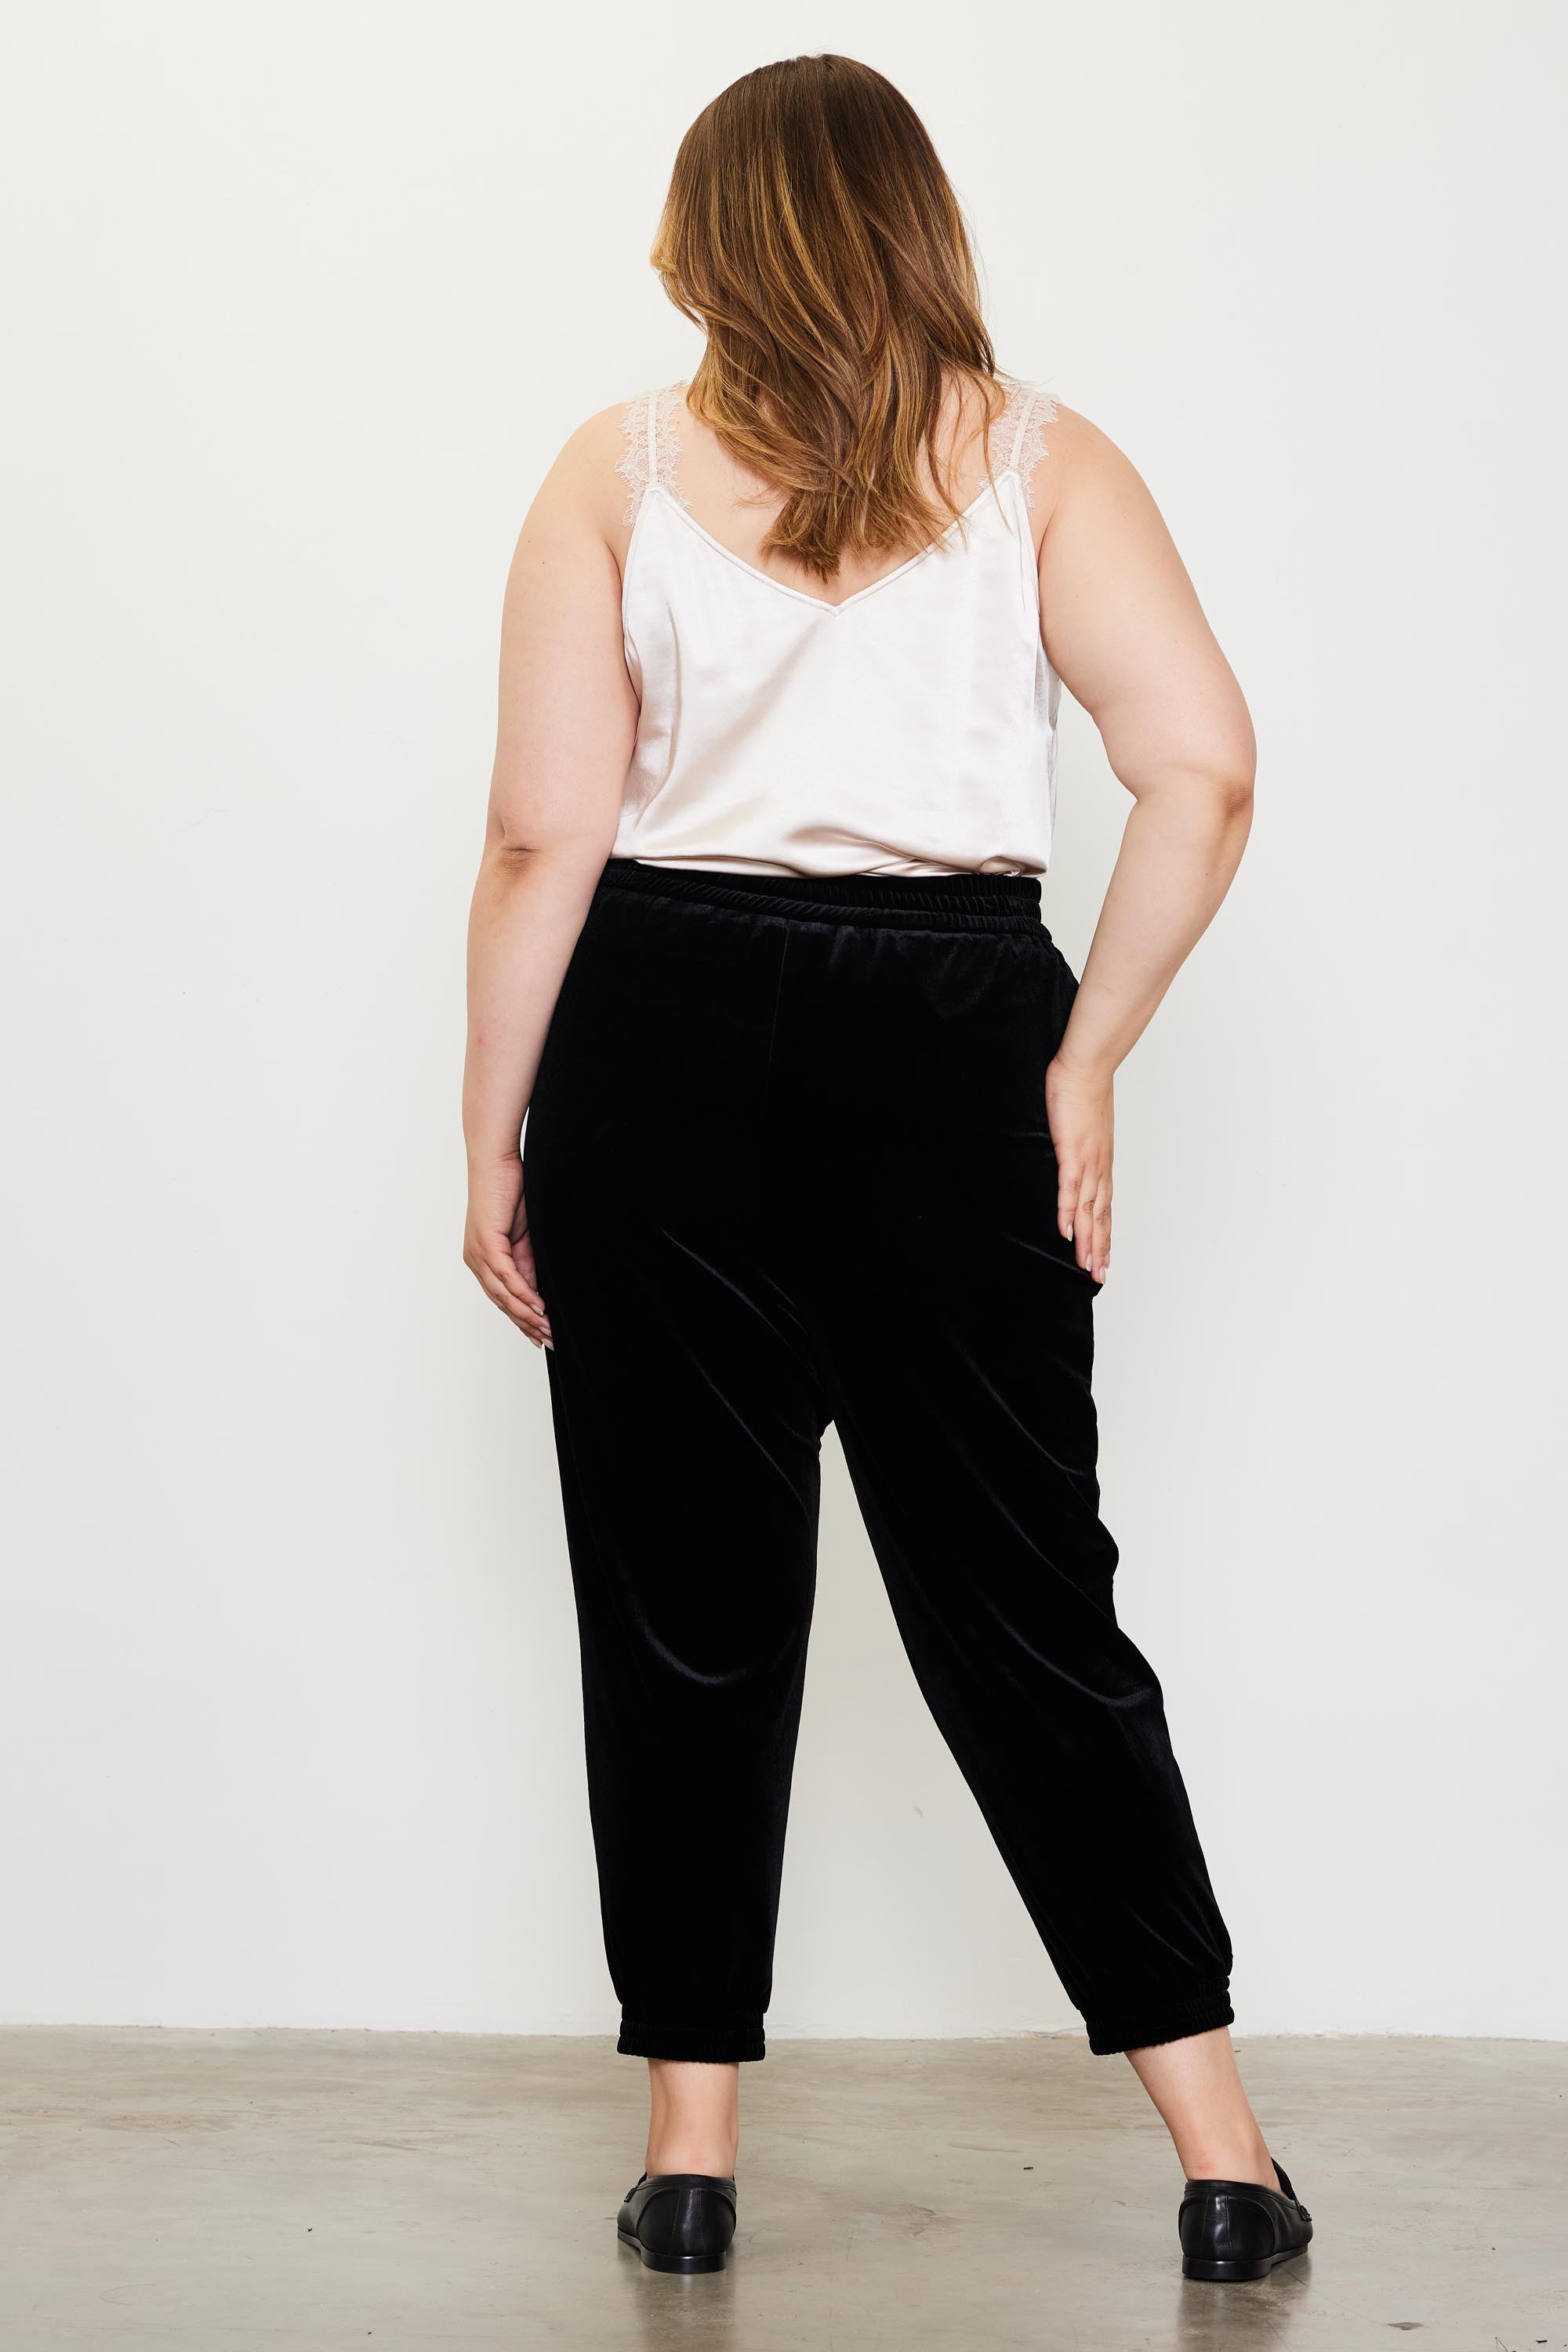 Velvet Jogger Pants (Plus Size - Black) – In Pursuit Mobile Boutique